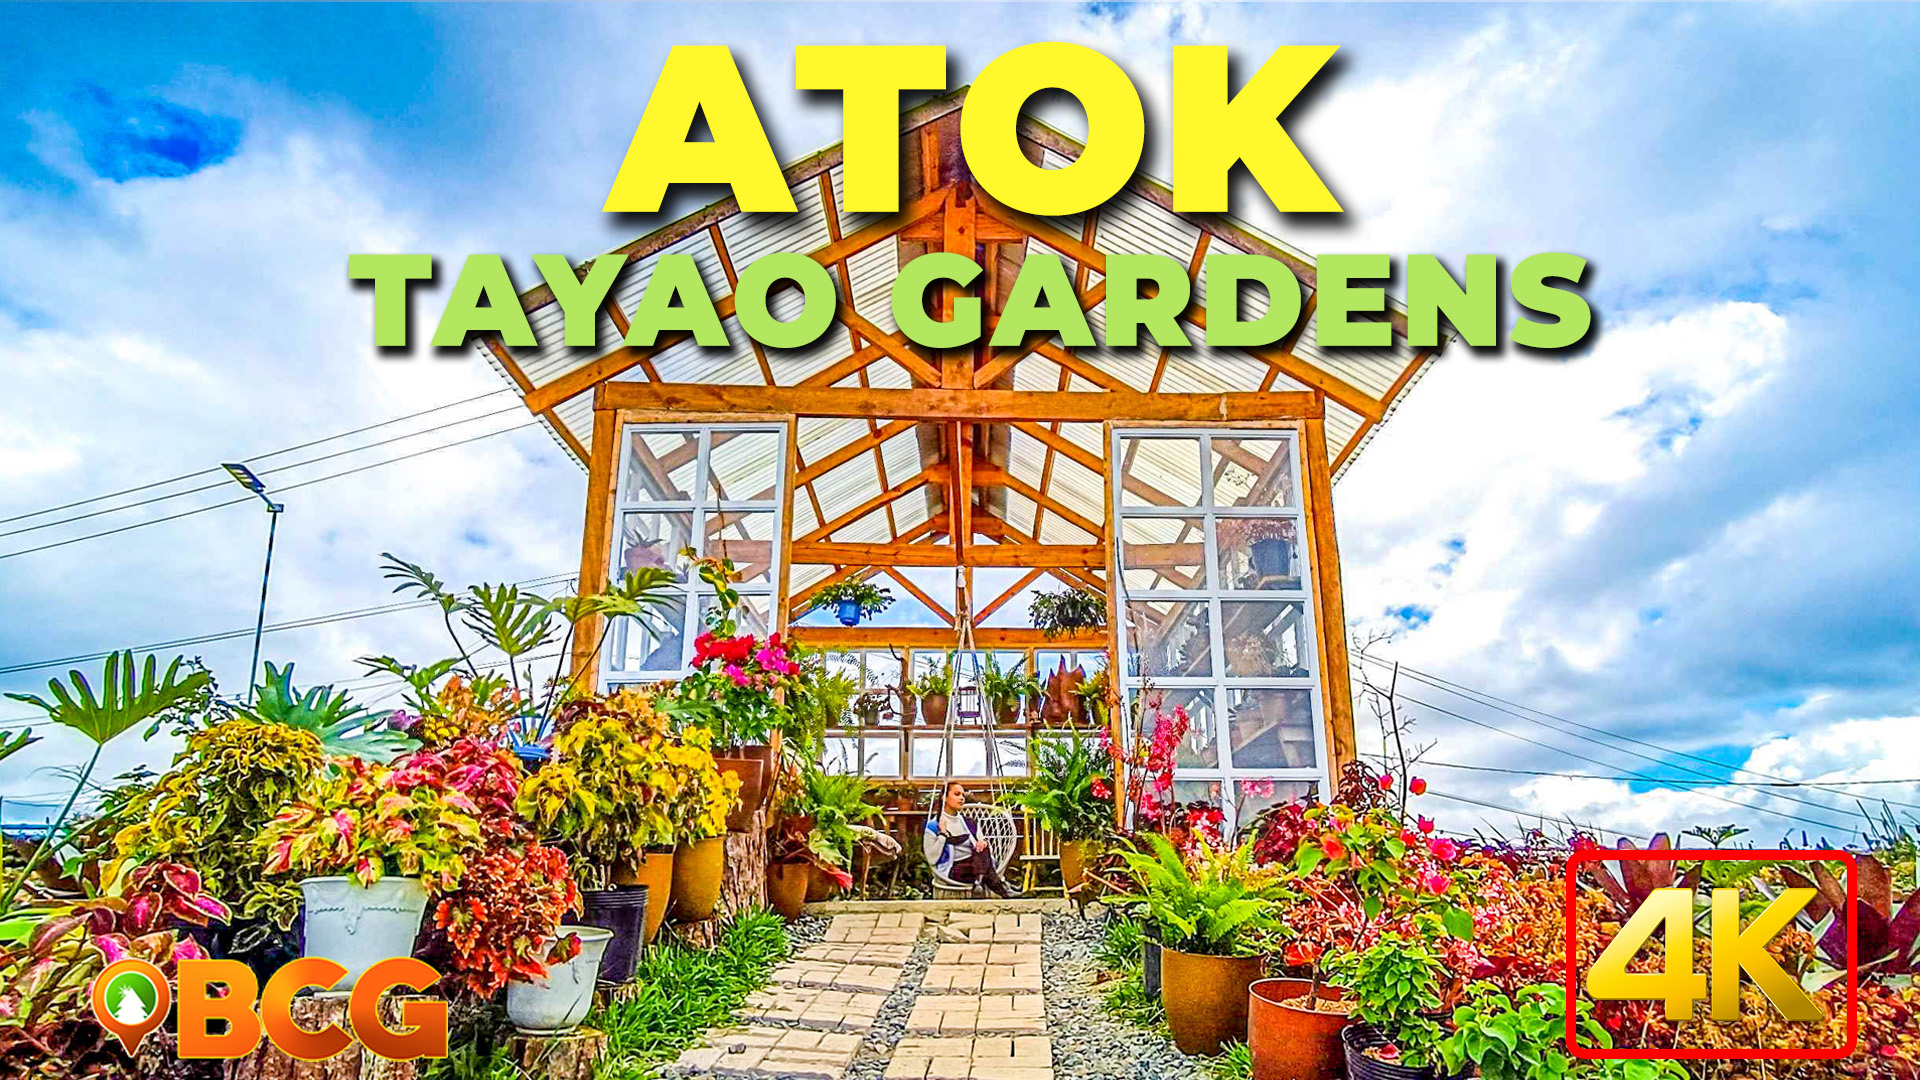 Tayao Gardens Atok Benguet Travel Guide Bcg